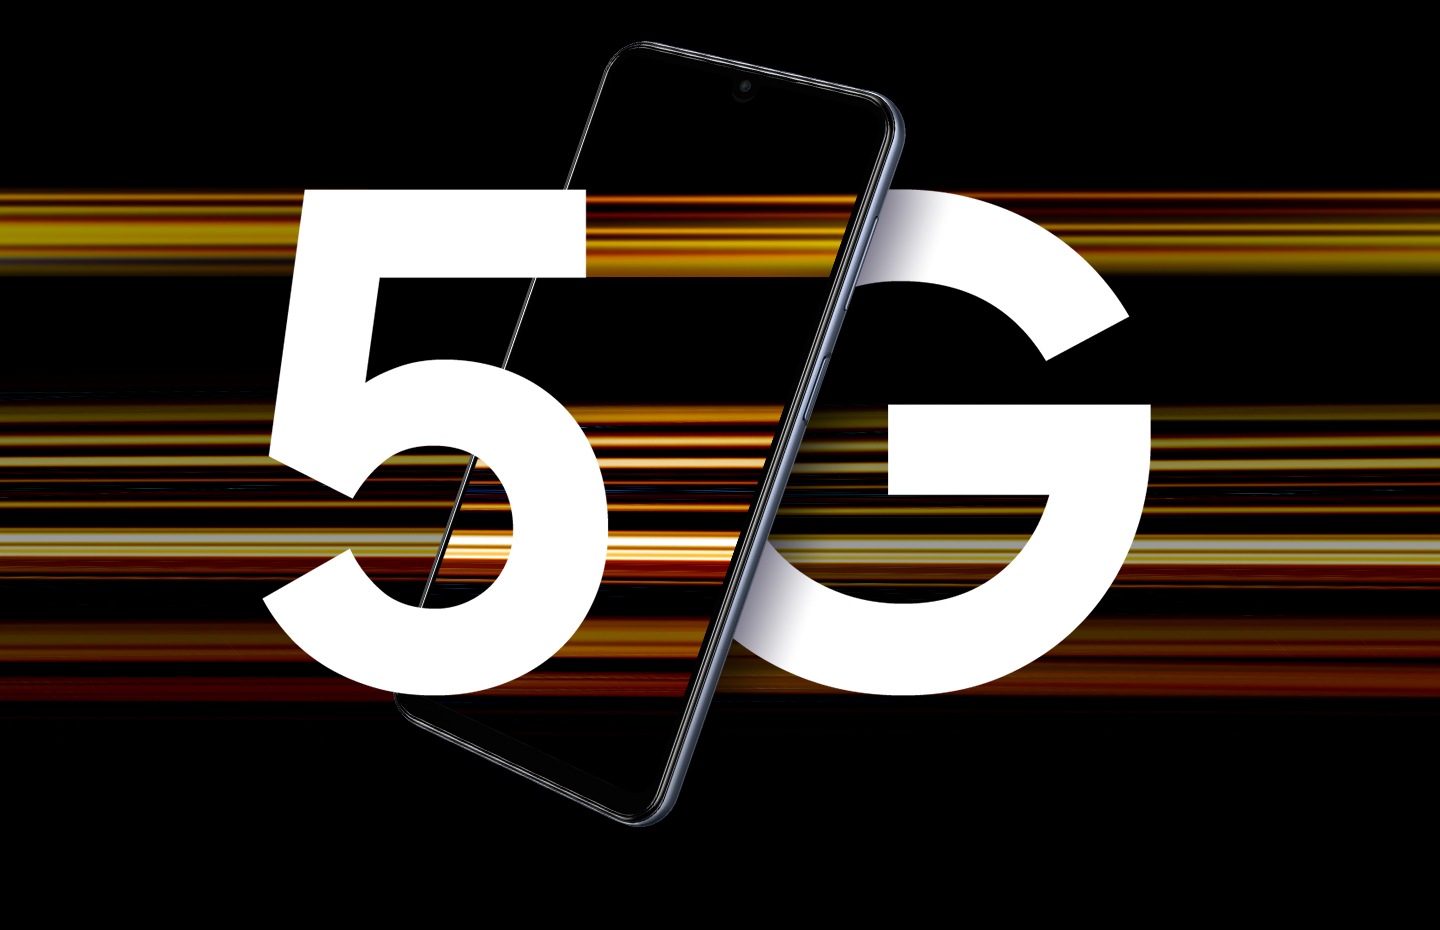 قدرت نسل بعدی اینترنت داده 5G تجربه کاملاً جدیدی را در تلفن همراهتان ارائه می‌دهد؛ از بازی فوق روان و پخش کردن تا اشتراک‌گذاری و دانلود فوق سریع لذت ببرید.